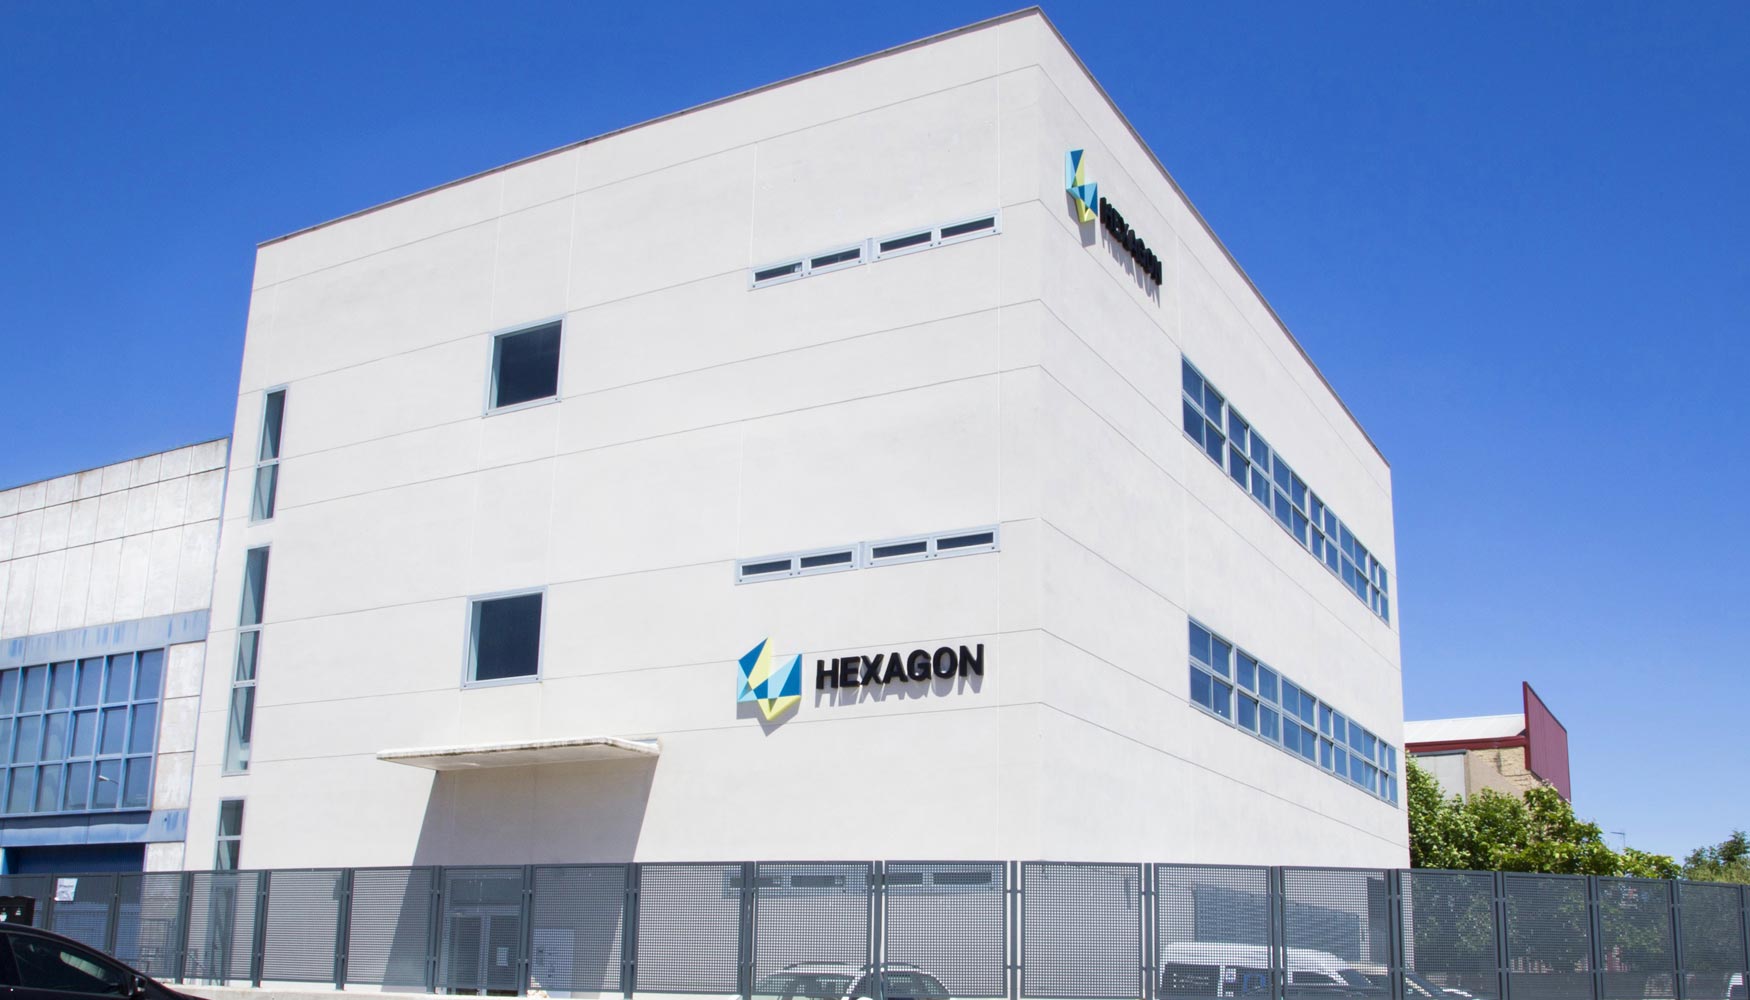 La filial espaola de Hexagon Manufacturing Intelligence ha trasladado su presencia en la zona de Madrid a unas amplias y modernas instalaciones...